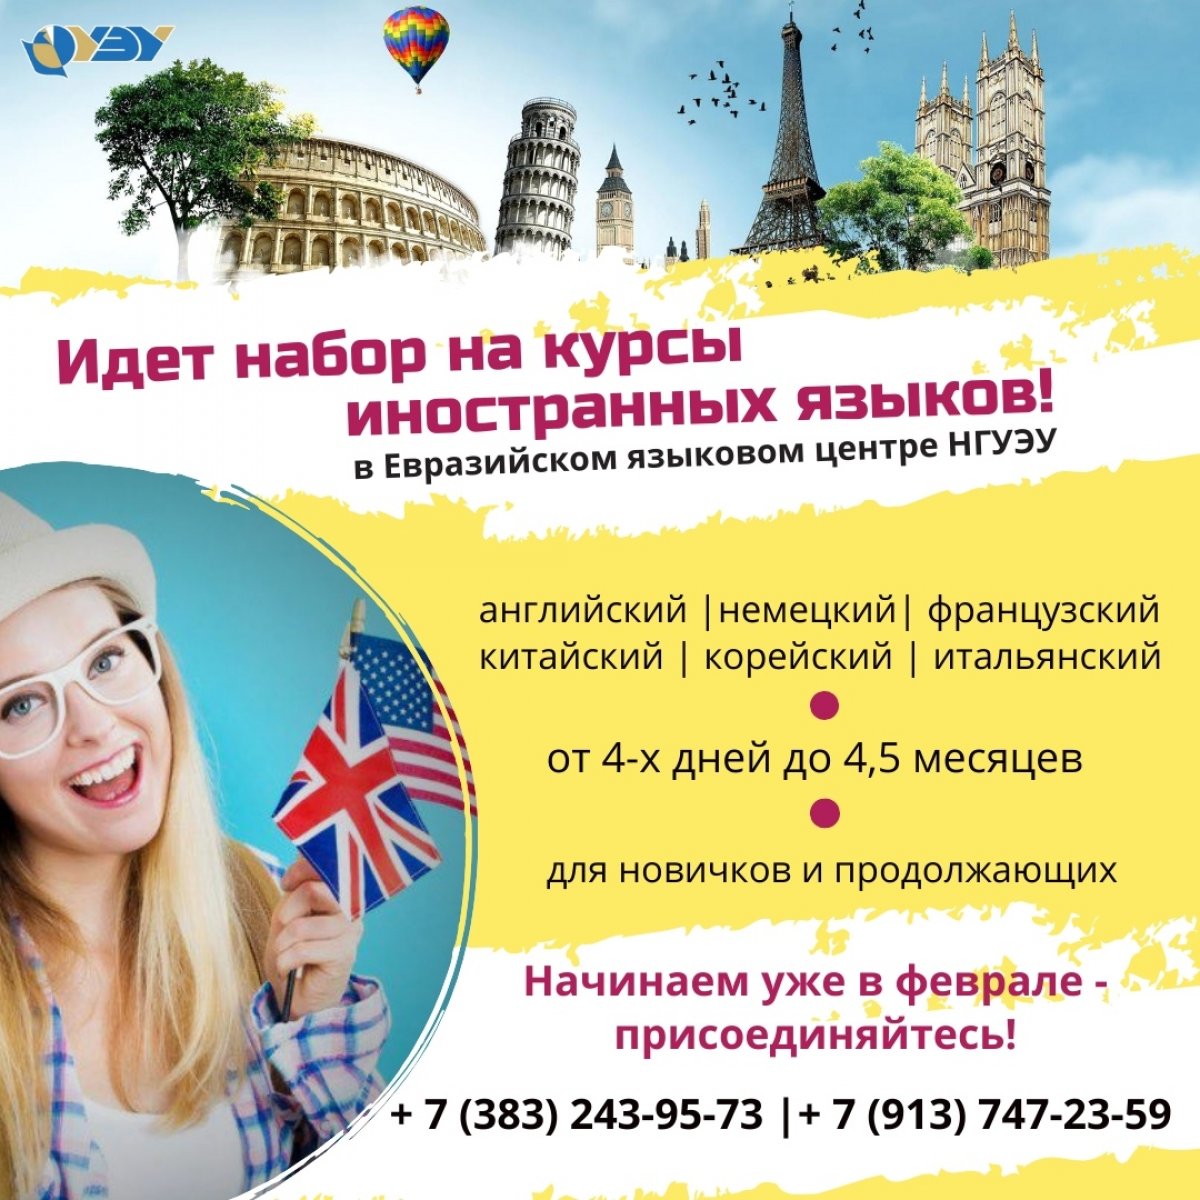 📢 Идет набор на курсы иностранных языков в Евразийский языковой центр НГУЭУ! Старт занятий уже в феврале! Присоединяйтесь 😉